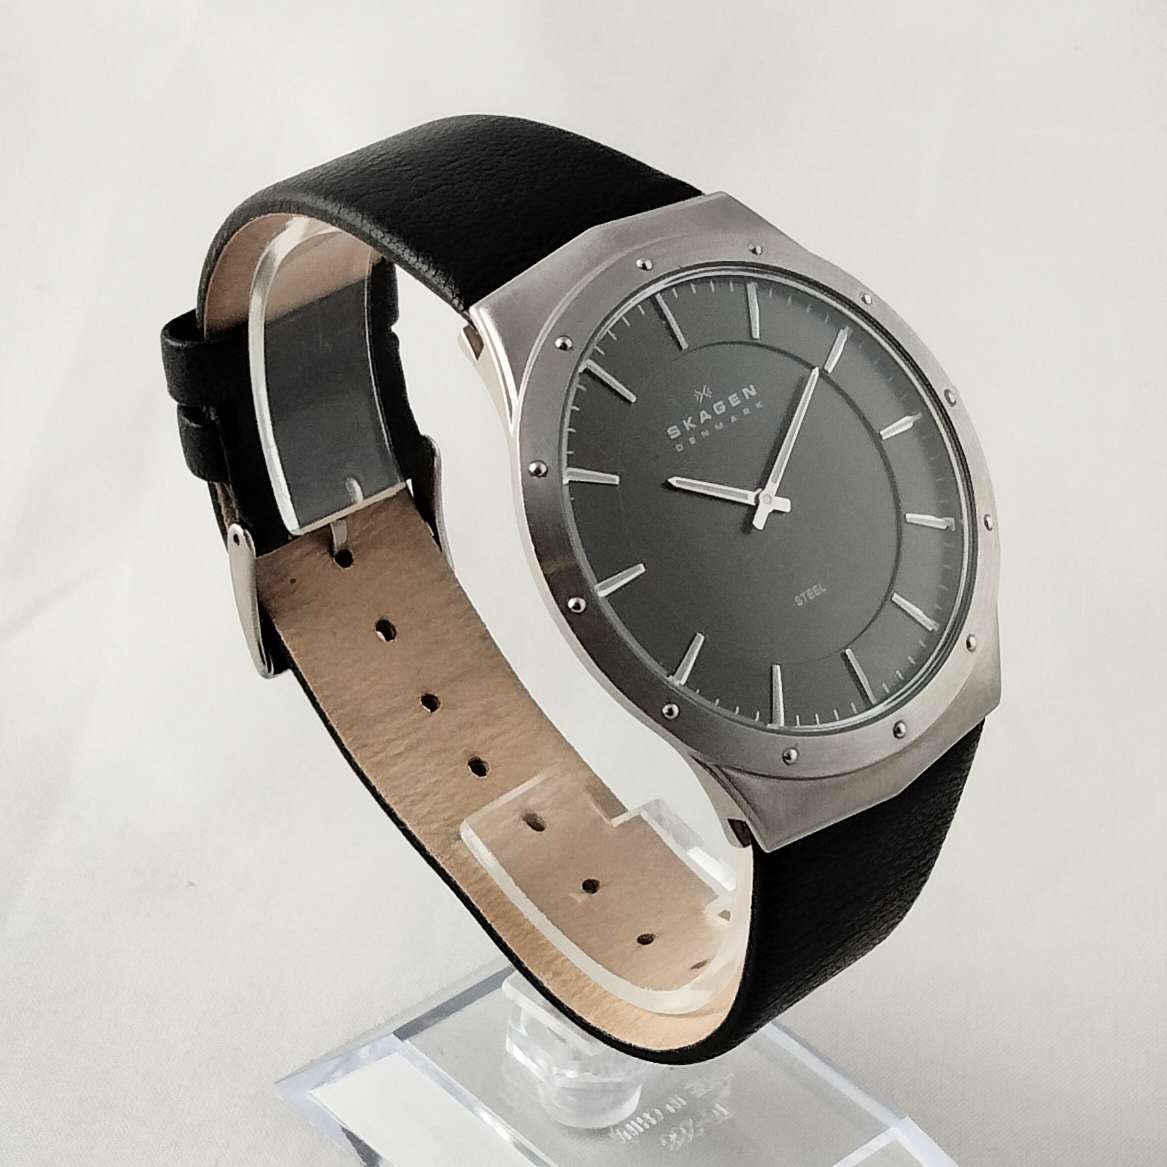 Skagen Oversized Men's Watch, Dark Gray Dial, Genuine Leather Strap